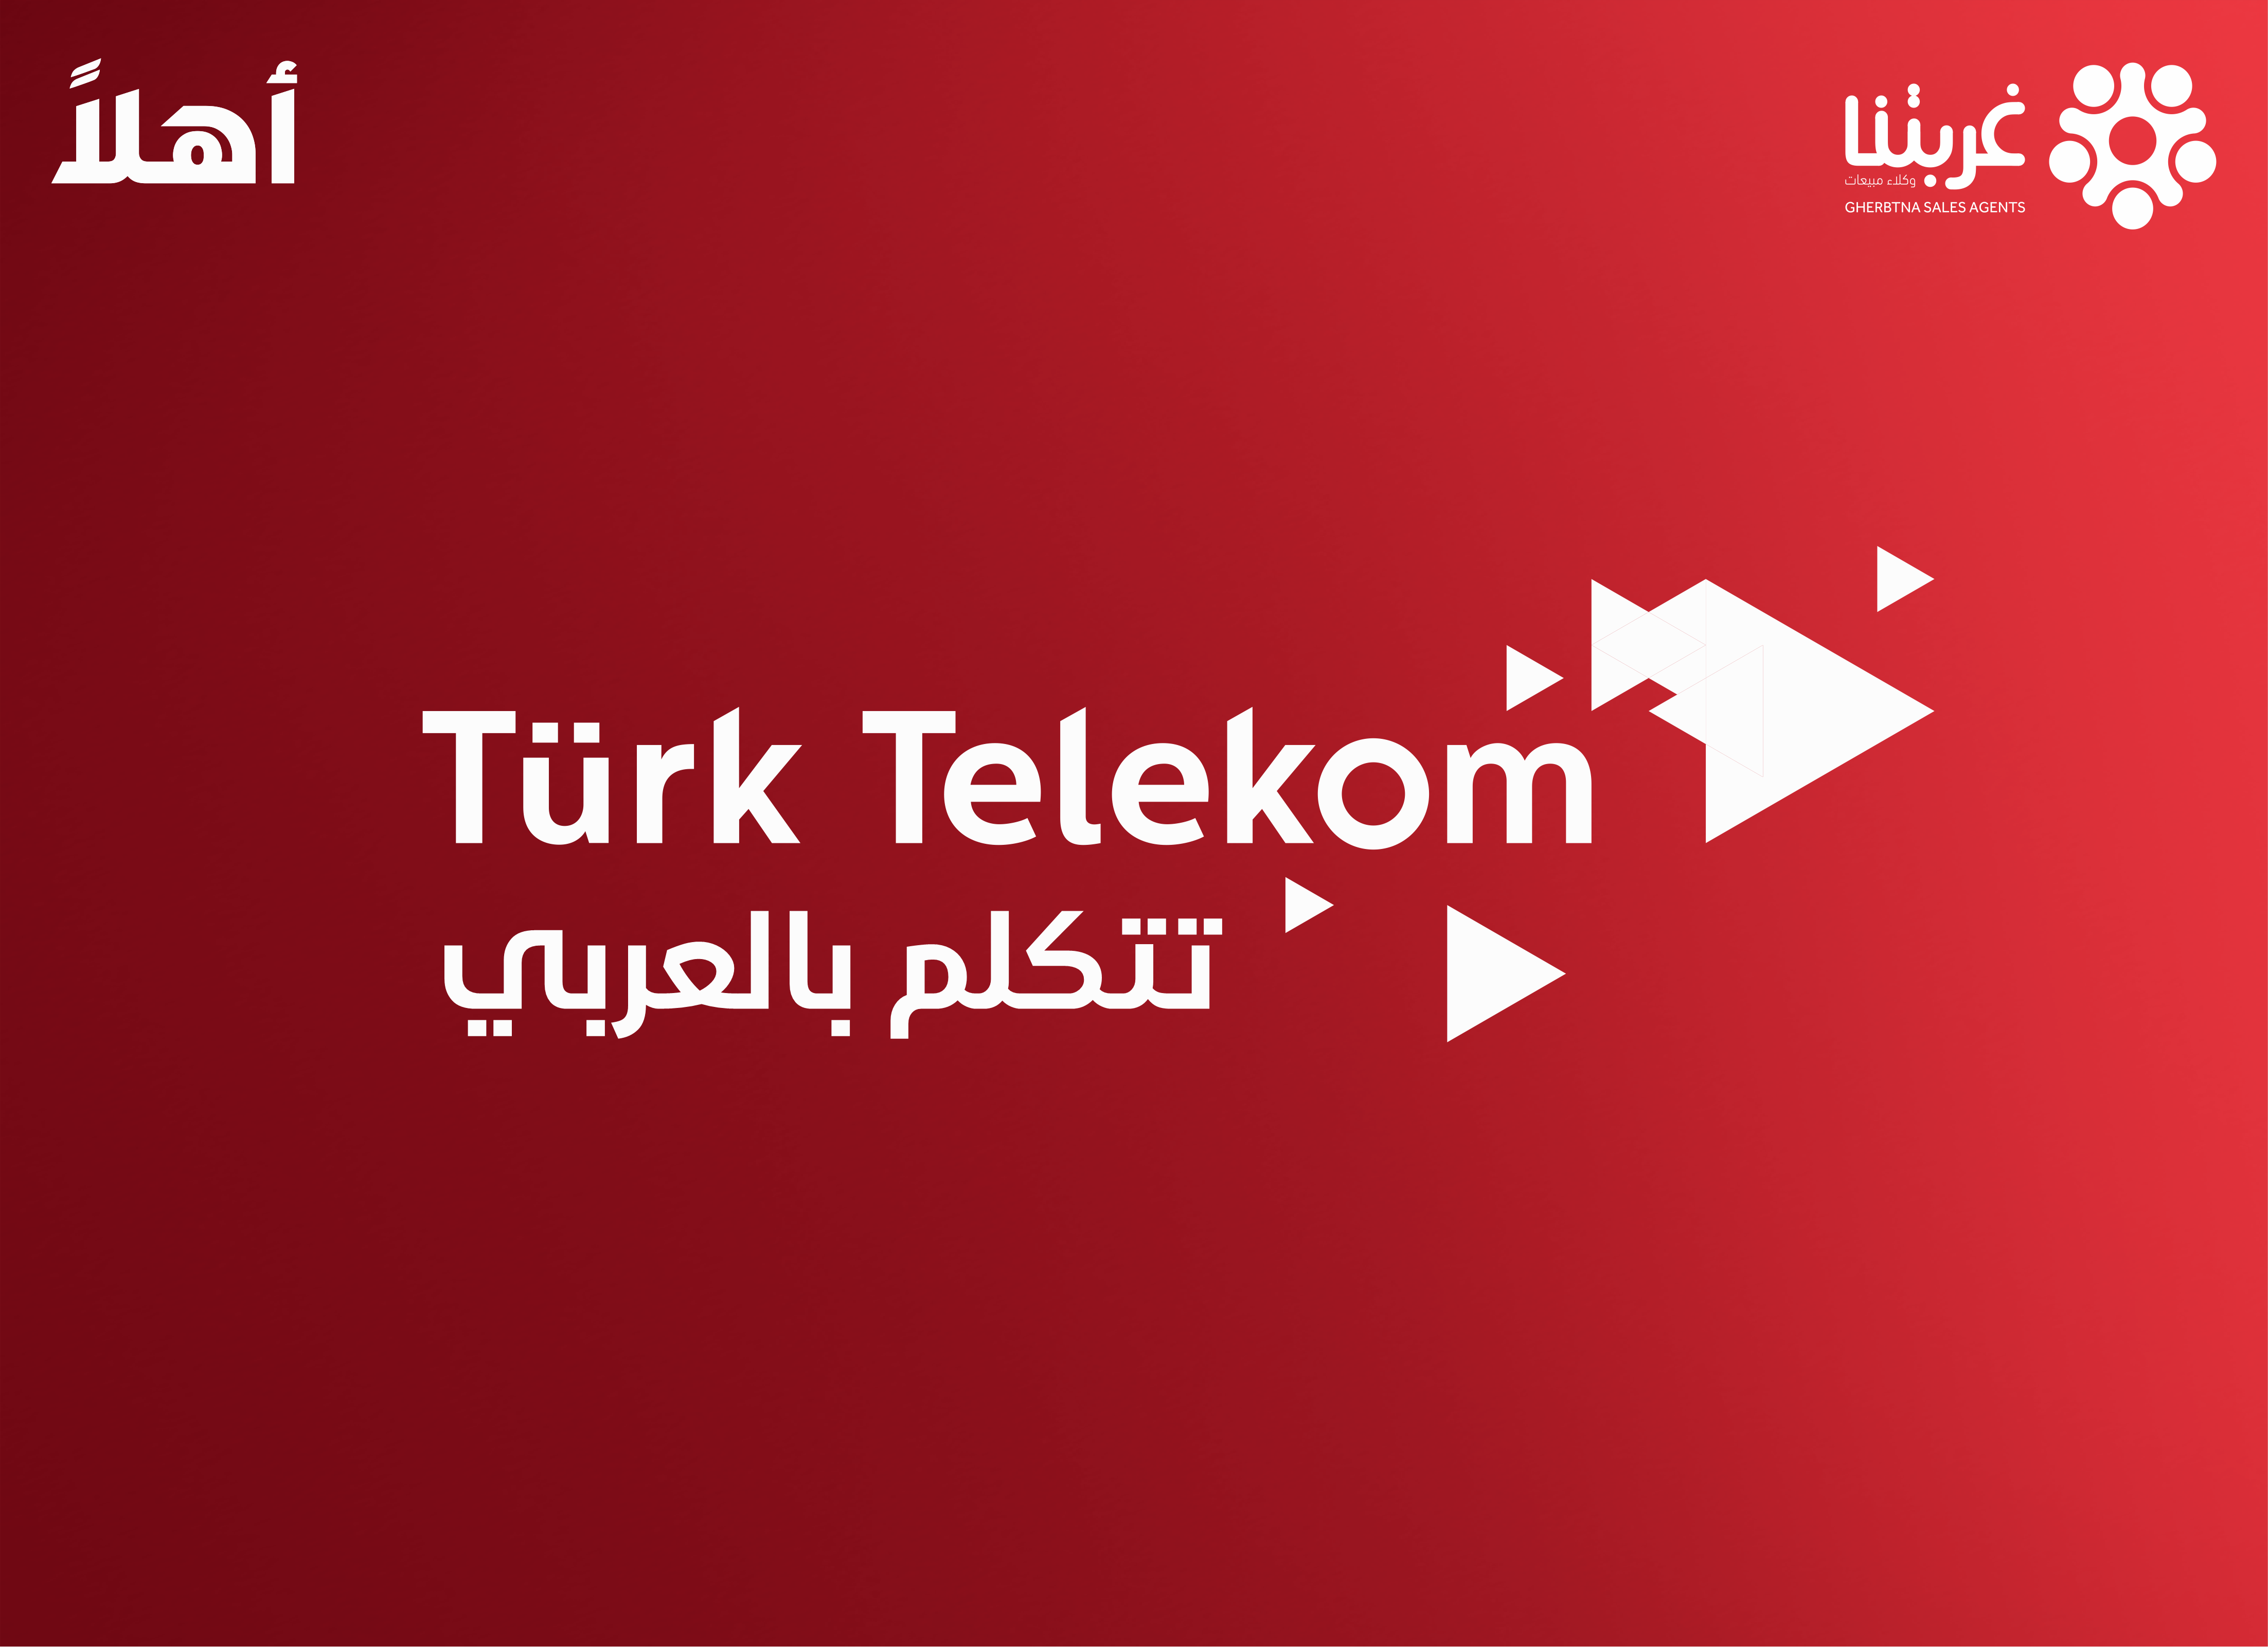 ترك تيليكوم ستطلق قريبا خدمة الـ e sim  في تركيا ... فتعرف عليها